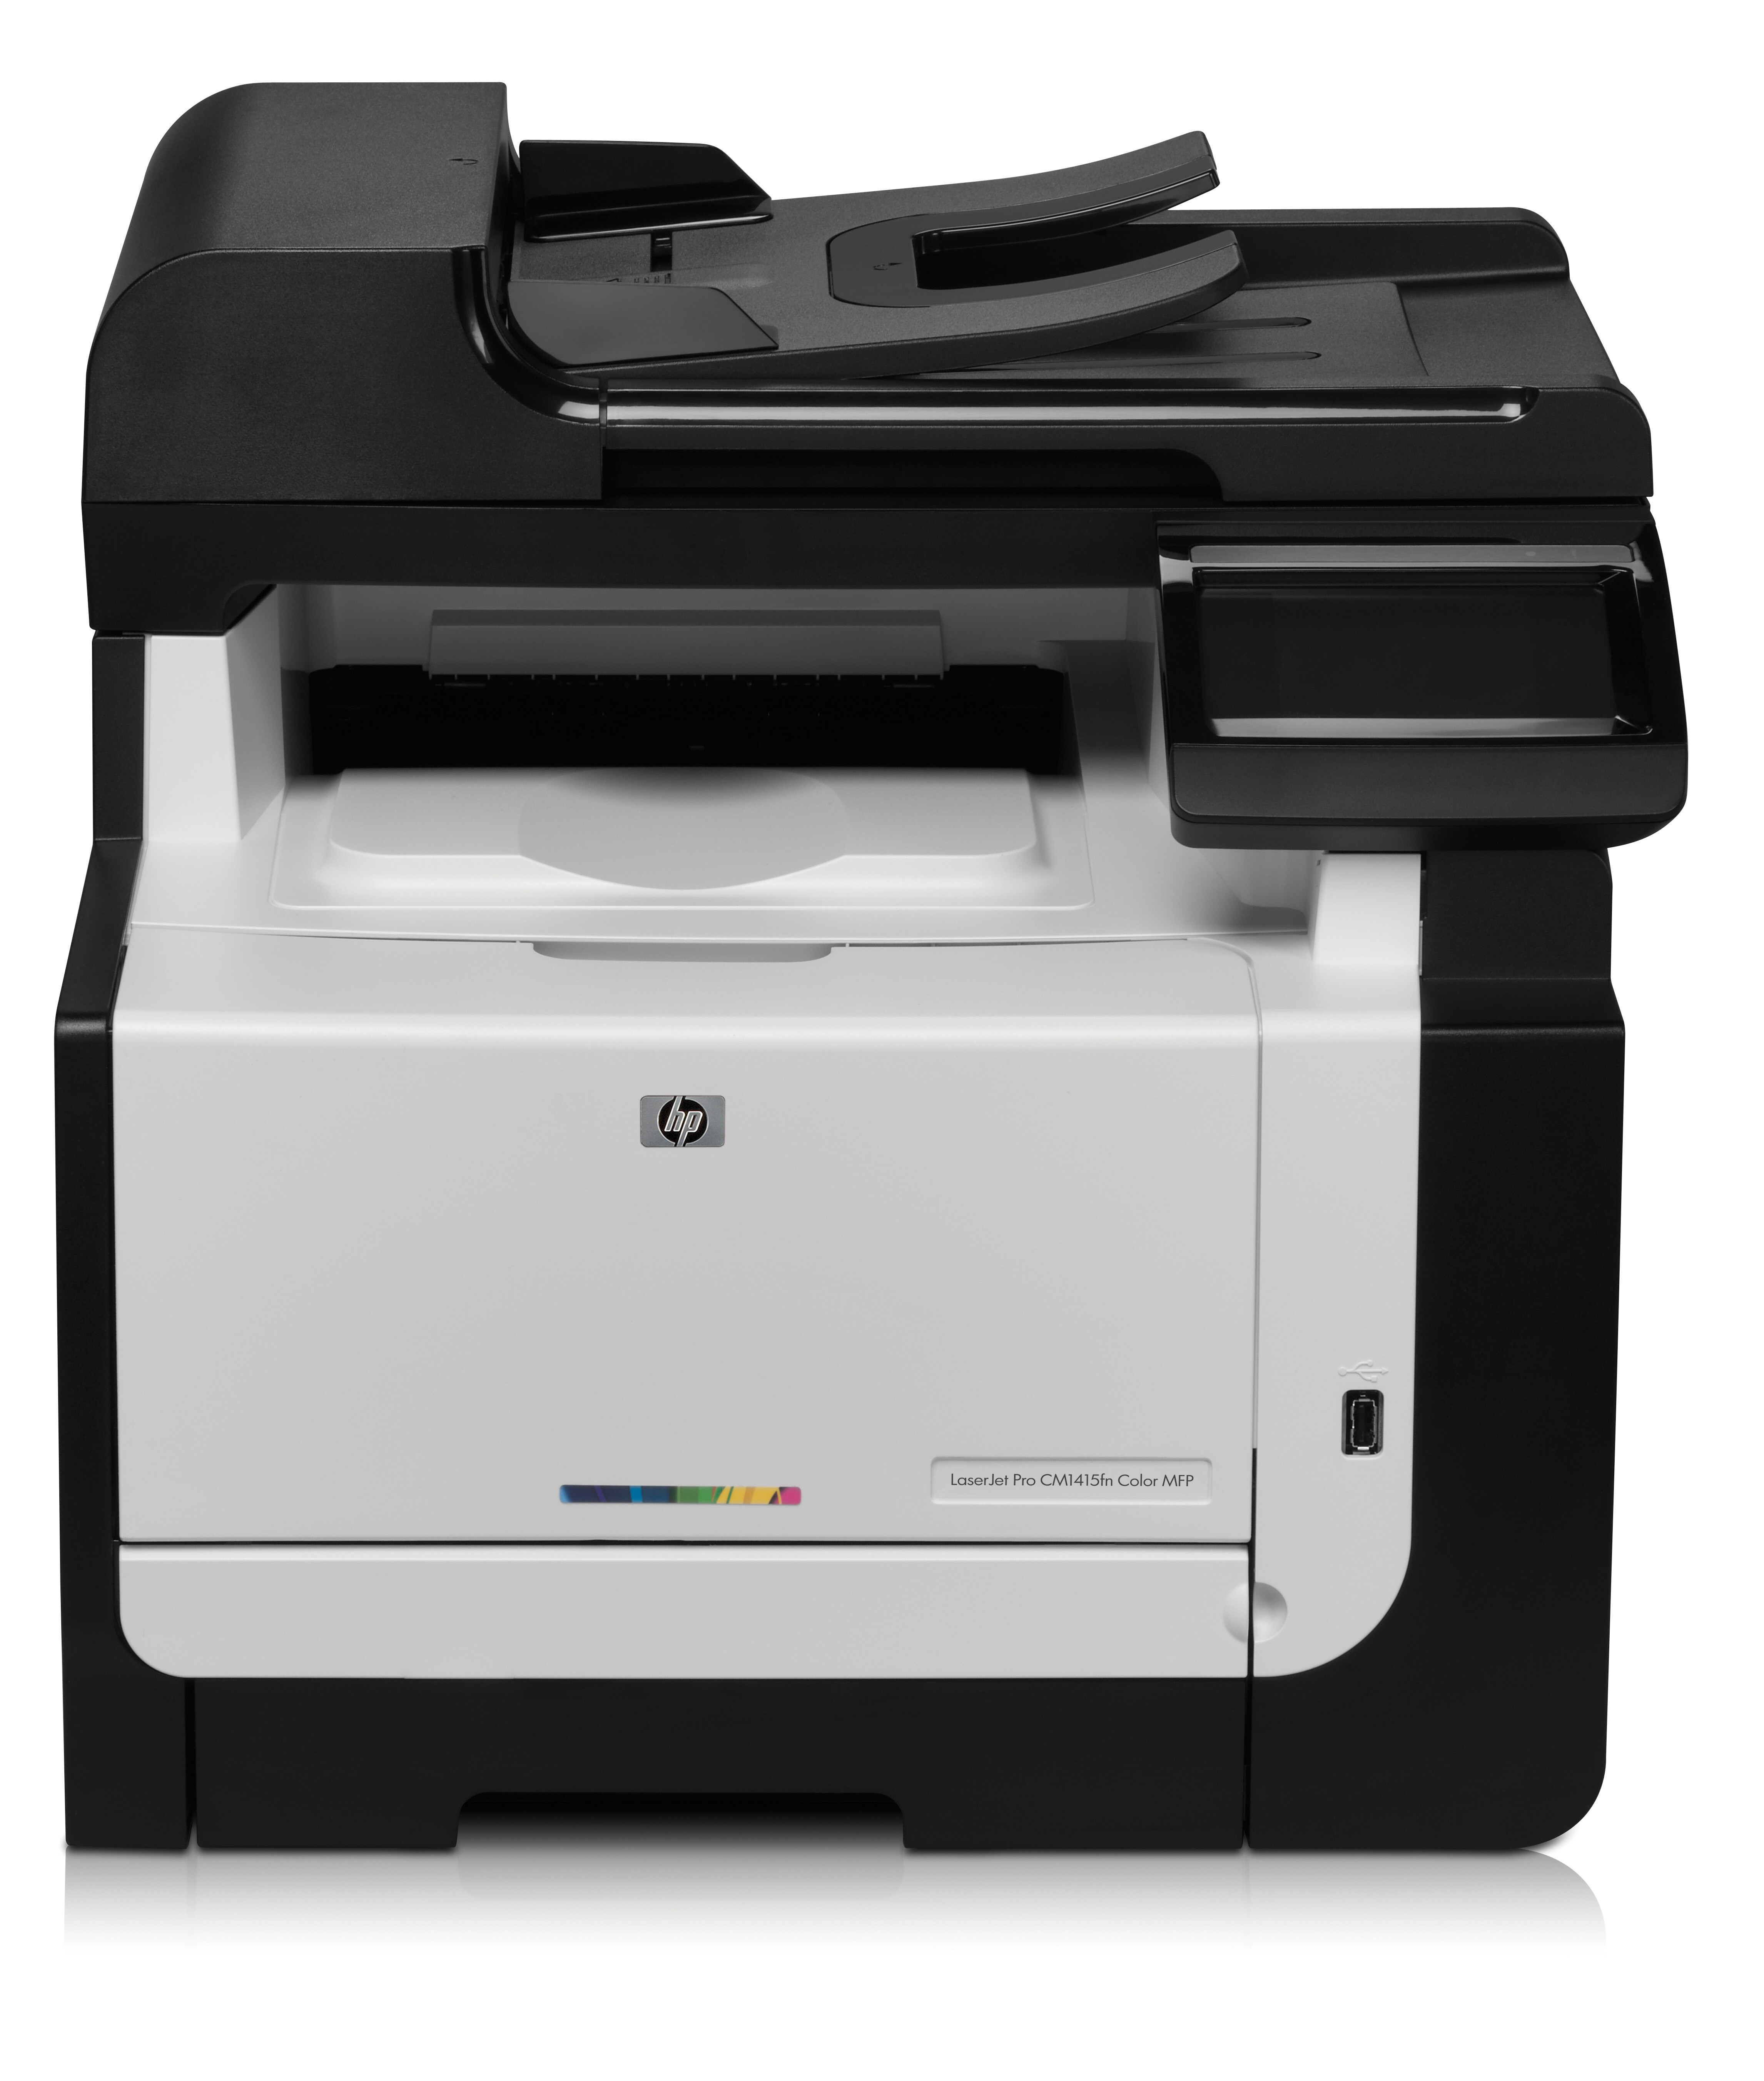 CE861A HP Color LaserJet Pro CM1415FN Multi Function Printer - Refurbished